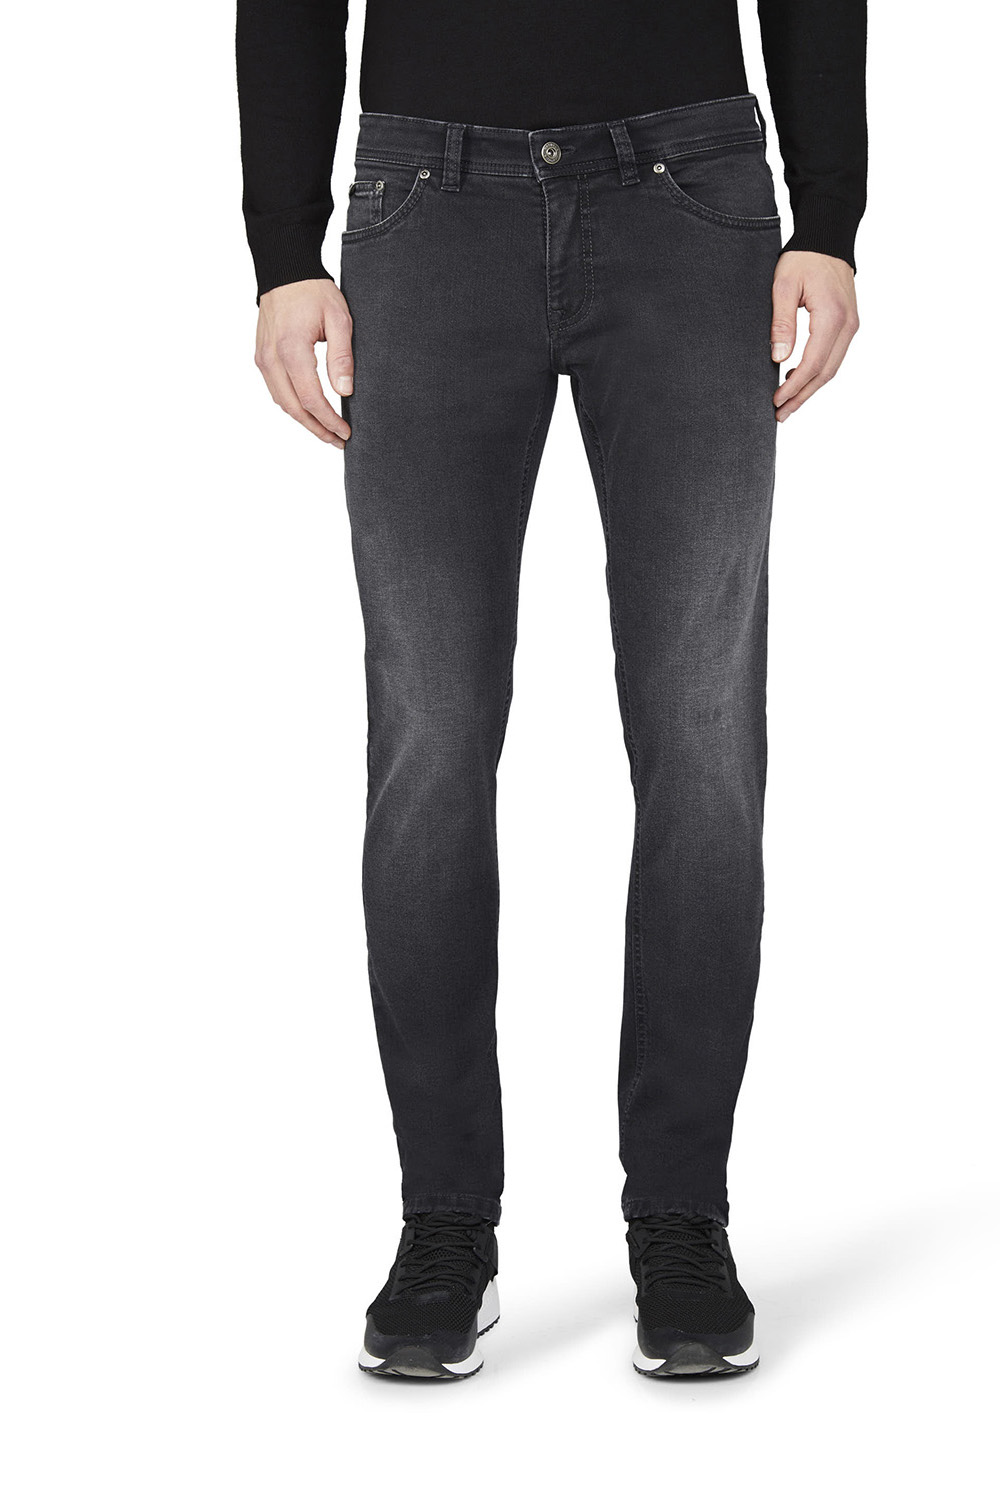 Gardeur - Sandro Slim Fit 5-Pocket Jeans Zwart - 42/32 - Heren